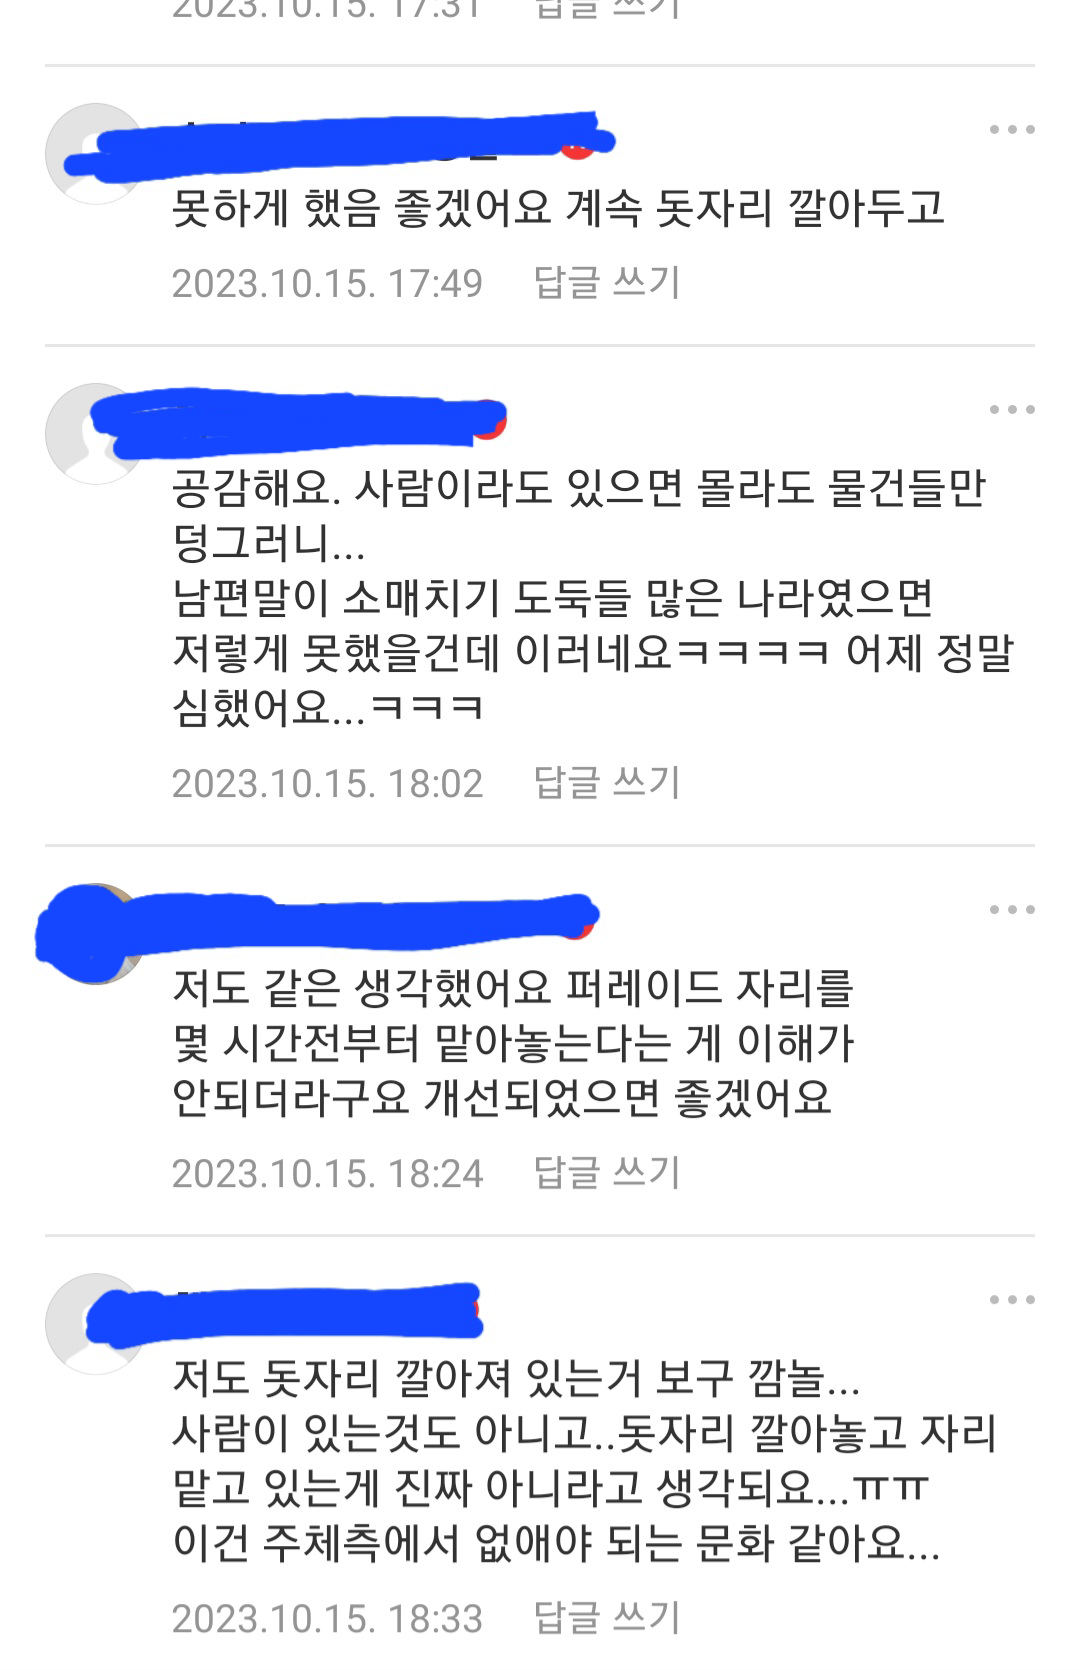 공룡엑스포 _퍼레이드를 돋자리로 자리 맡기 행태 금지요청